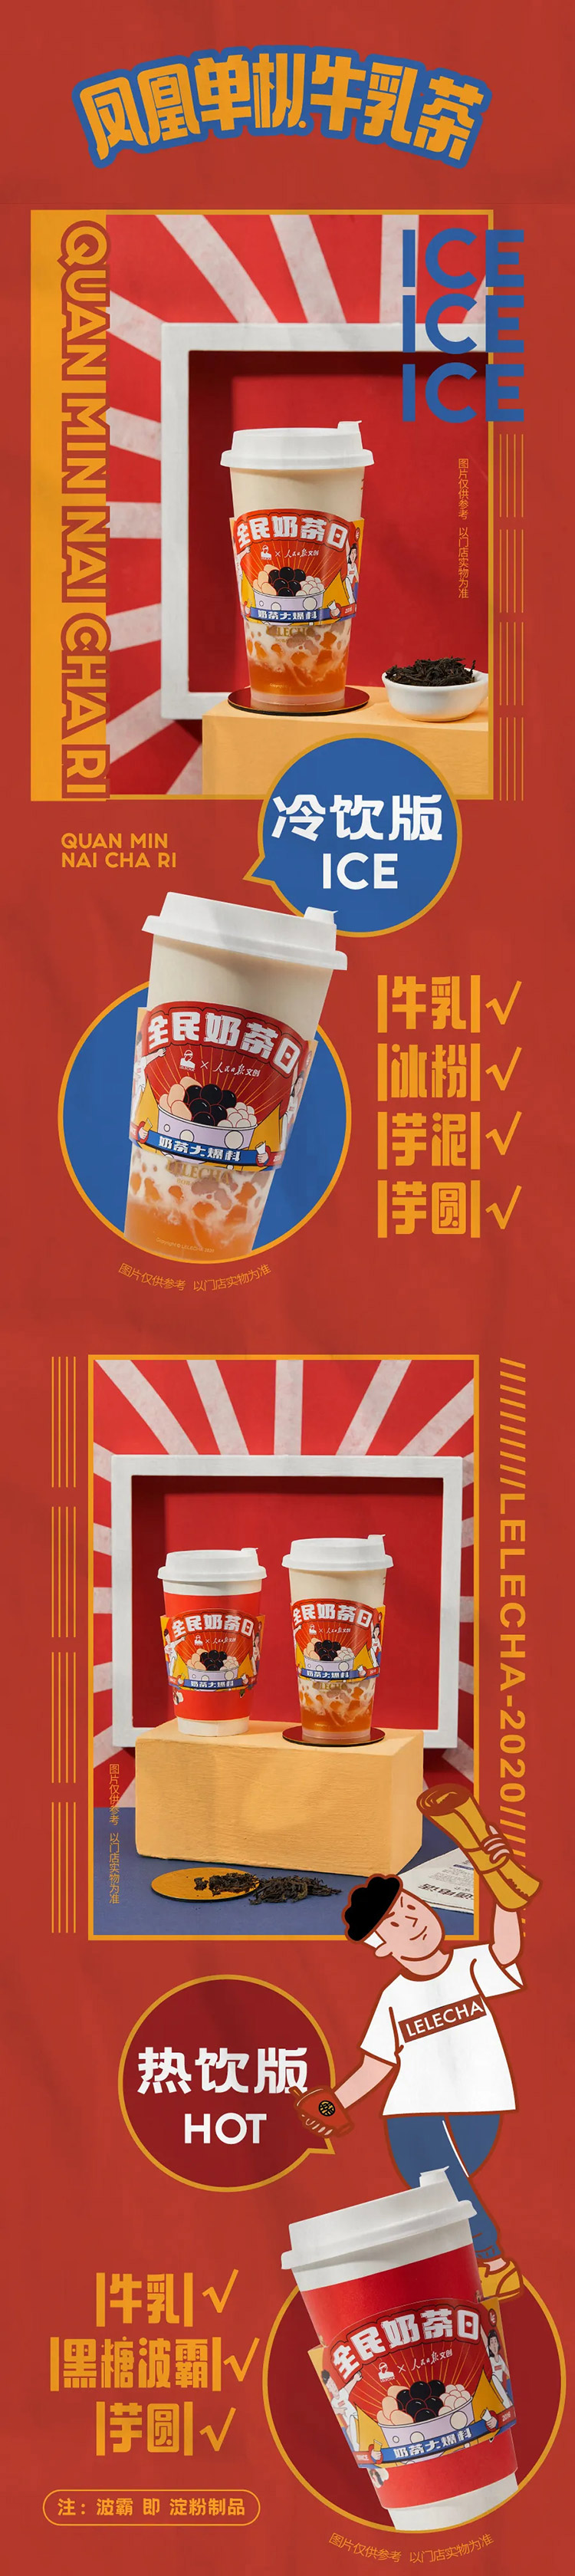 12张暖色系奶茶H5长图设计